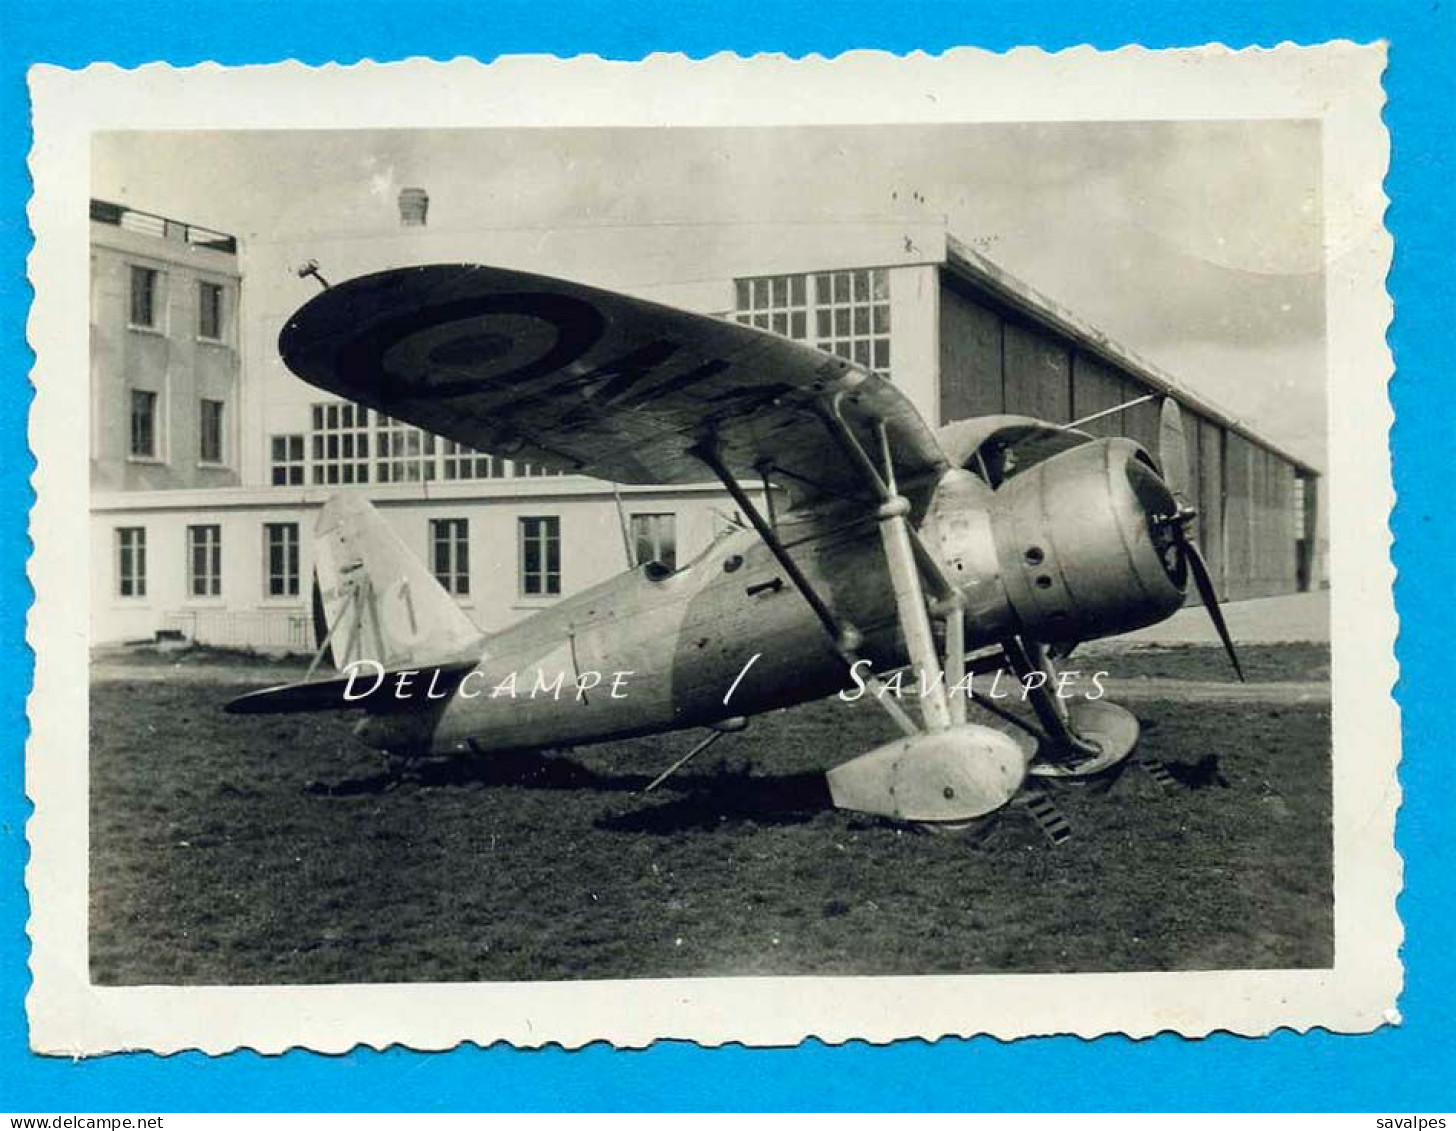 Aviation * Avion Loire 46 (à Déterminer ?) * Photo Originale 1938 - Luftfahrt